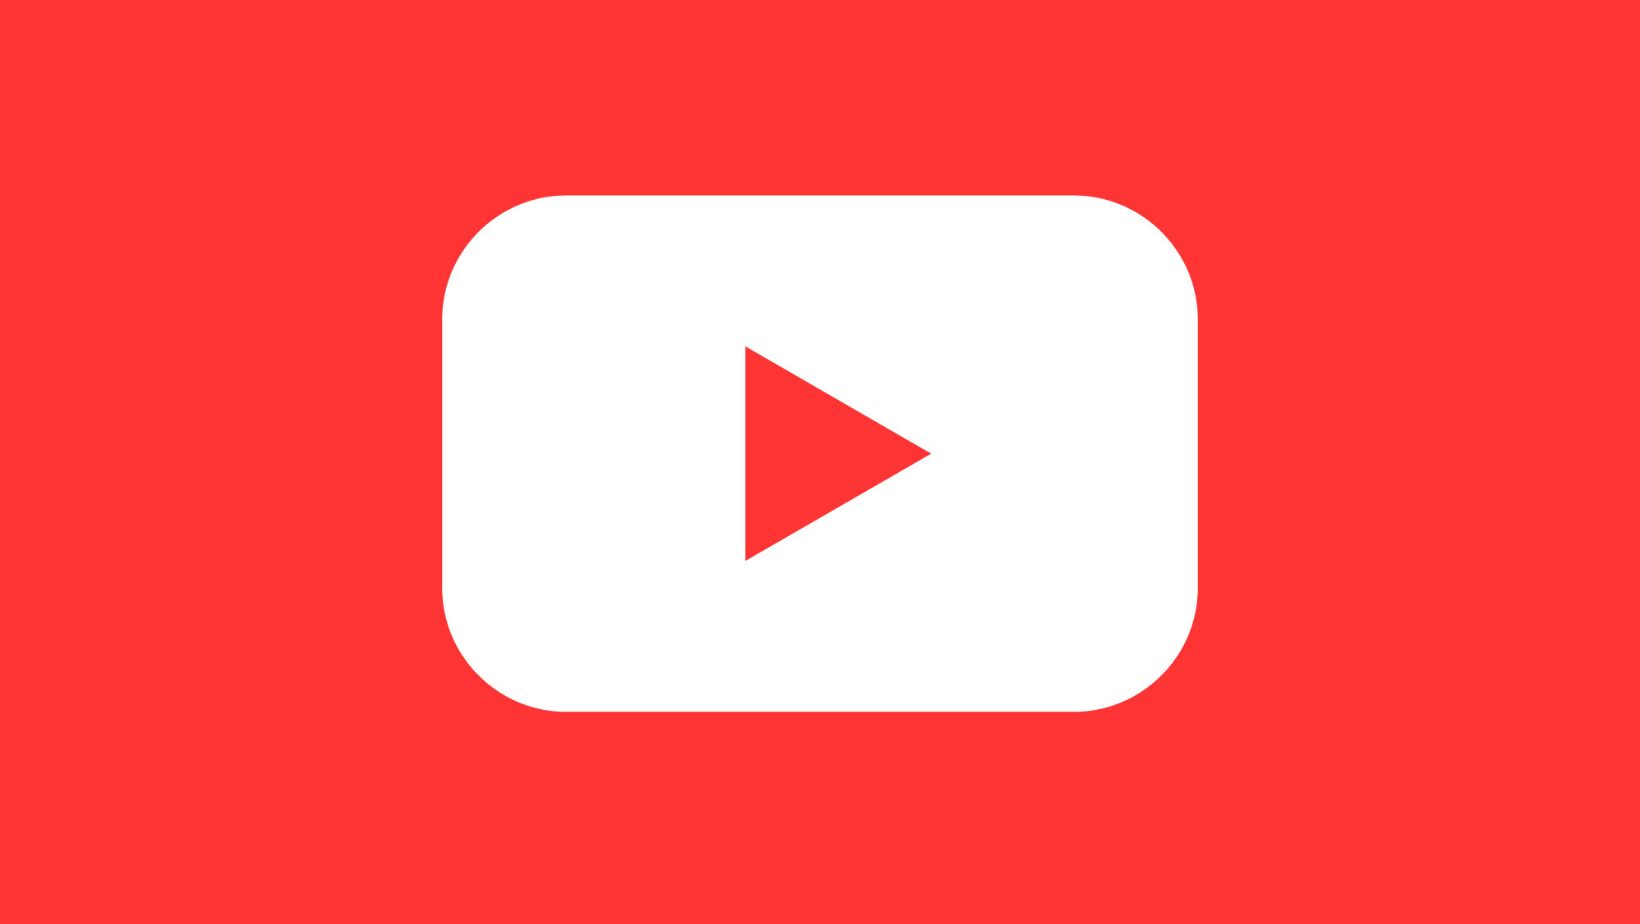 Youtube revanced premium. Ютуб revanced. Youtube revanced logo. Youtube revanced New icon. Youtube revanced.